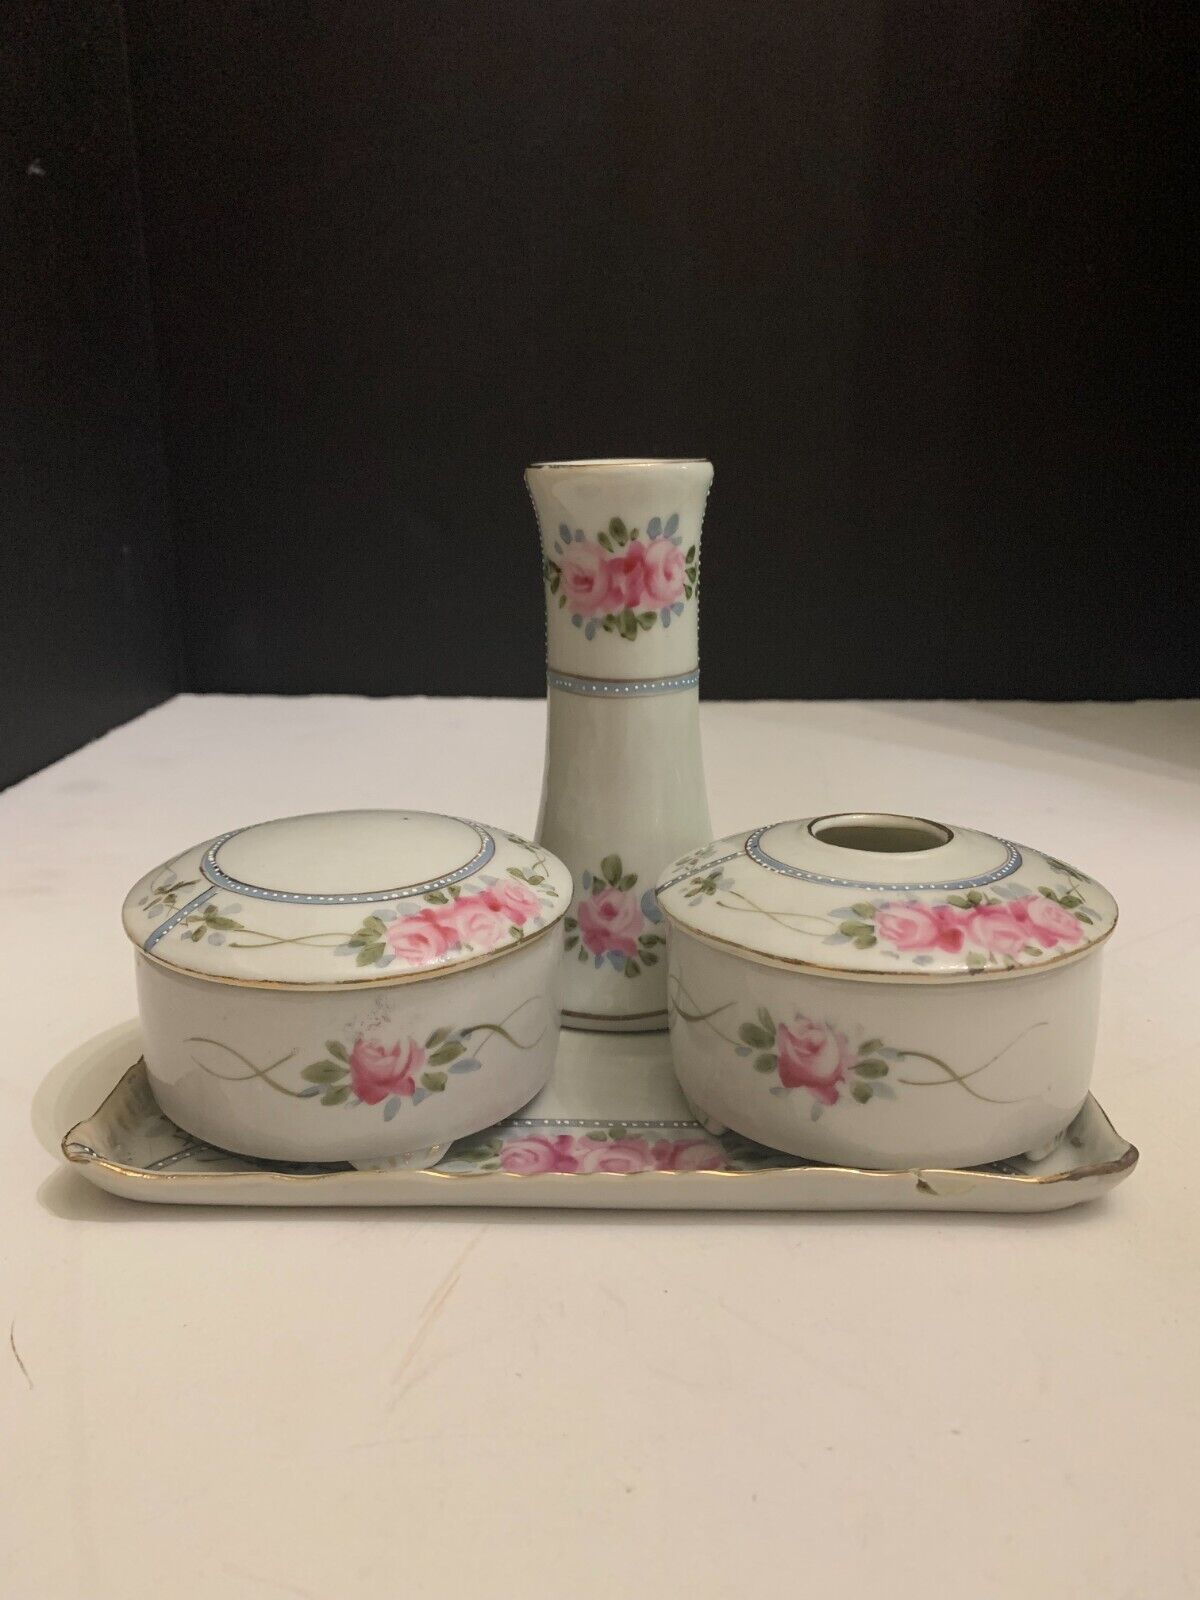 Vintage 4 Piece Porcelain Dresser Vanity Set Pink Roses Made in Japan